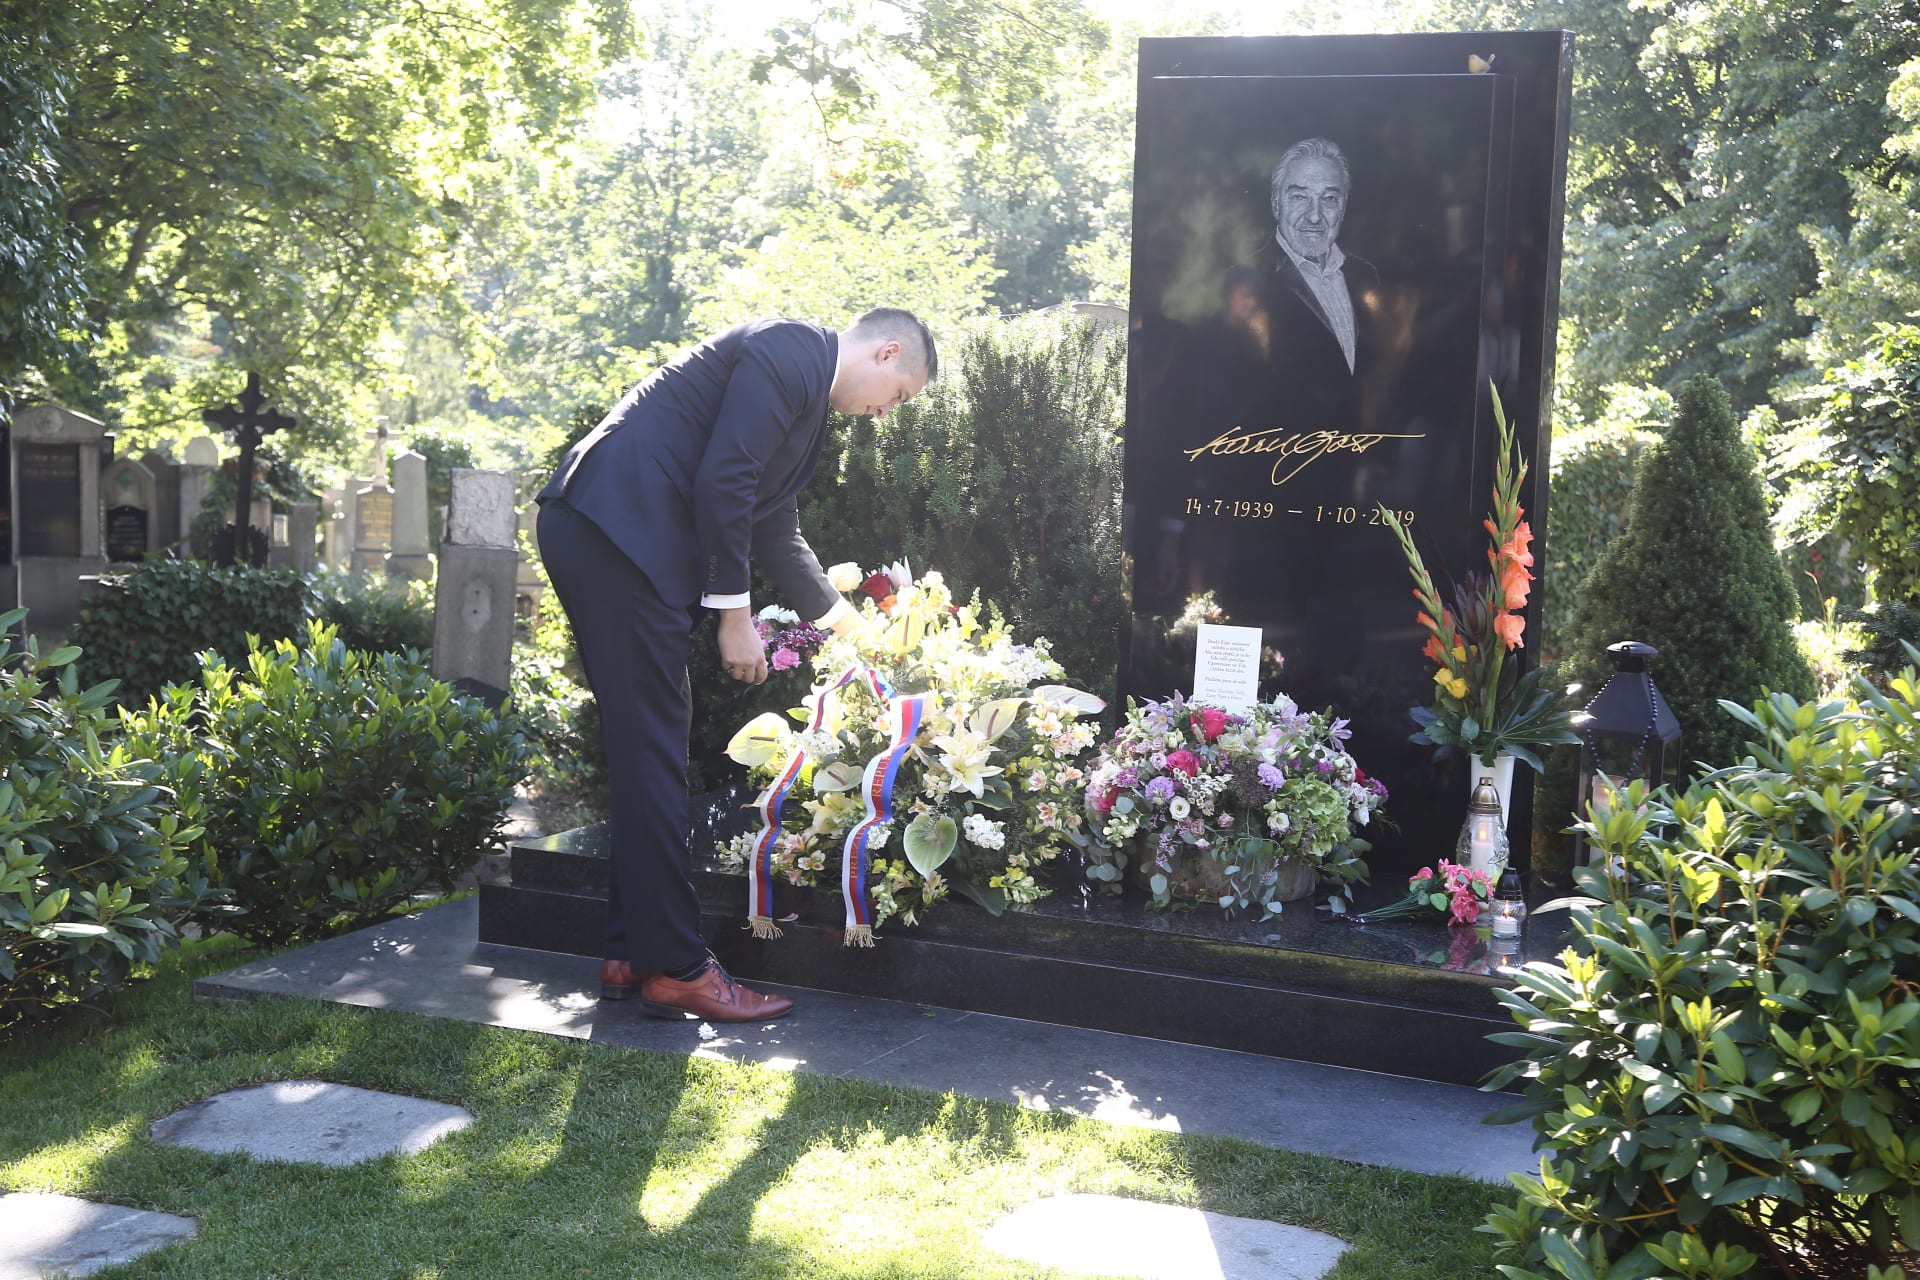 Ostatky Pilarové budou pohřbeny na hřbitově v pražských Malvazinkách, kde navždy odpočívá i Karel Gott.